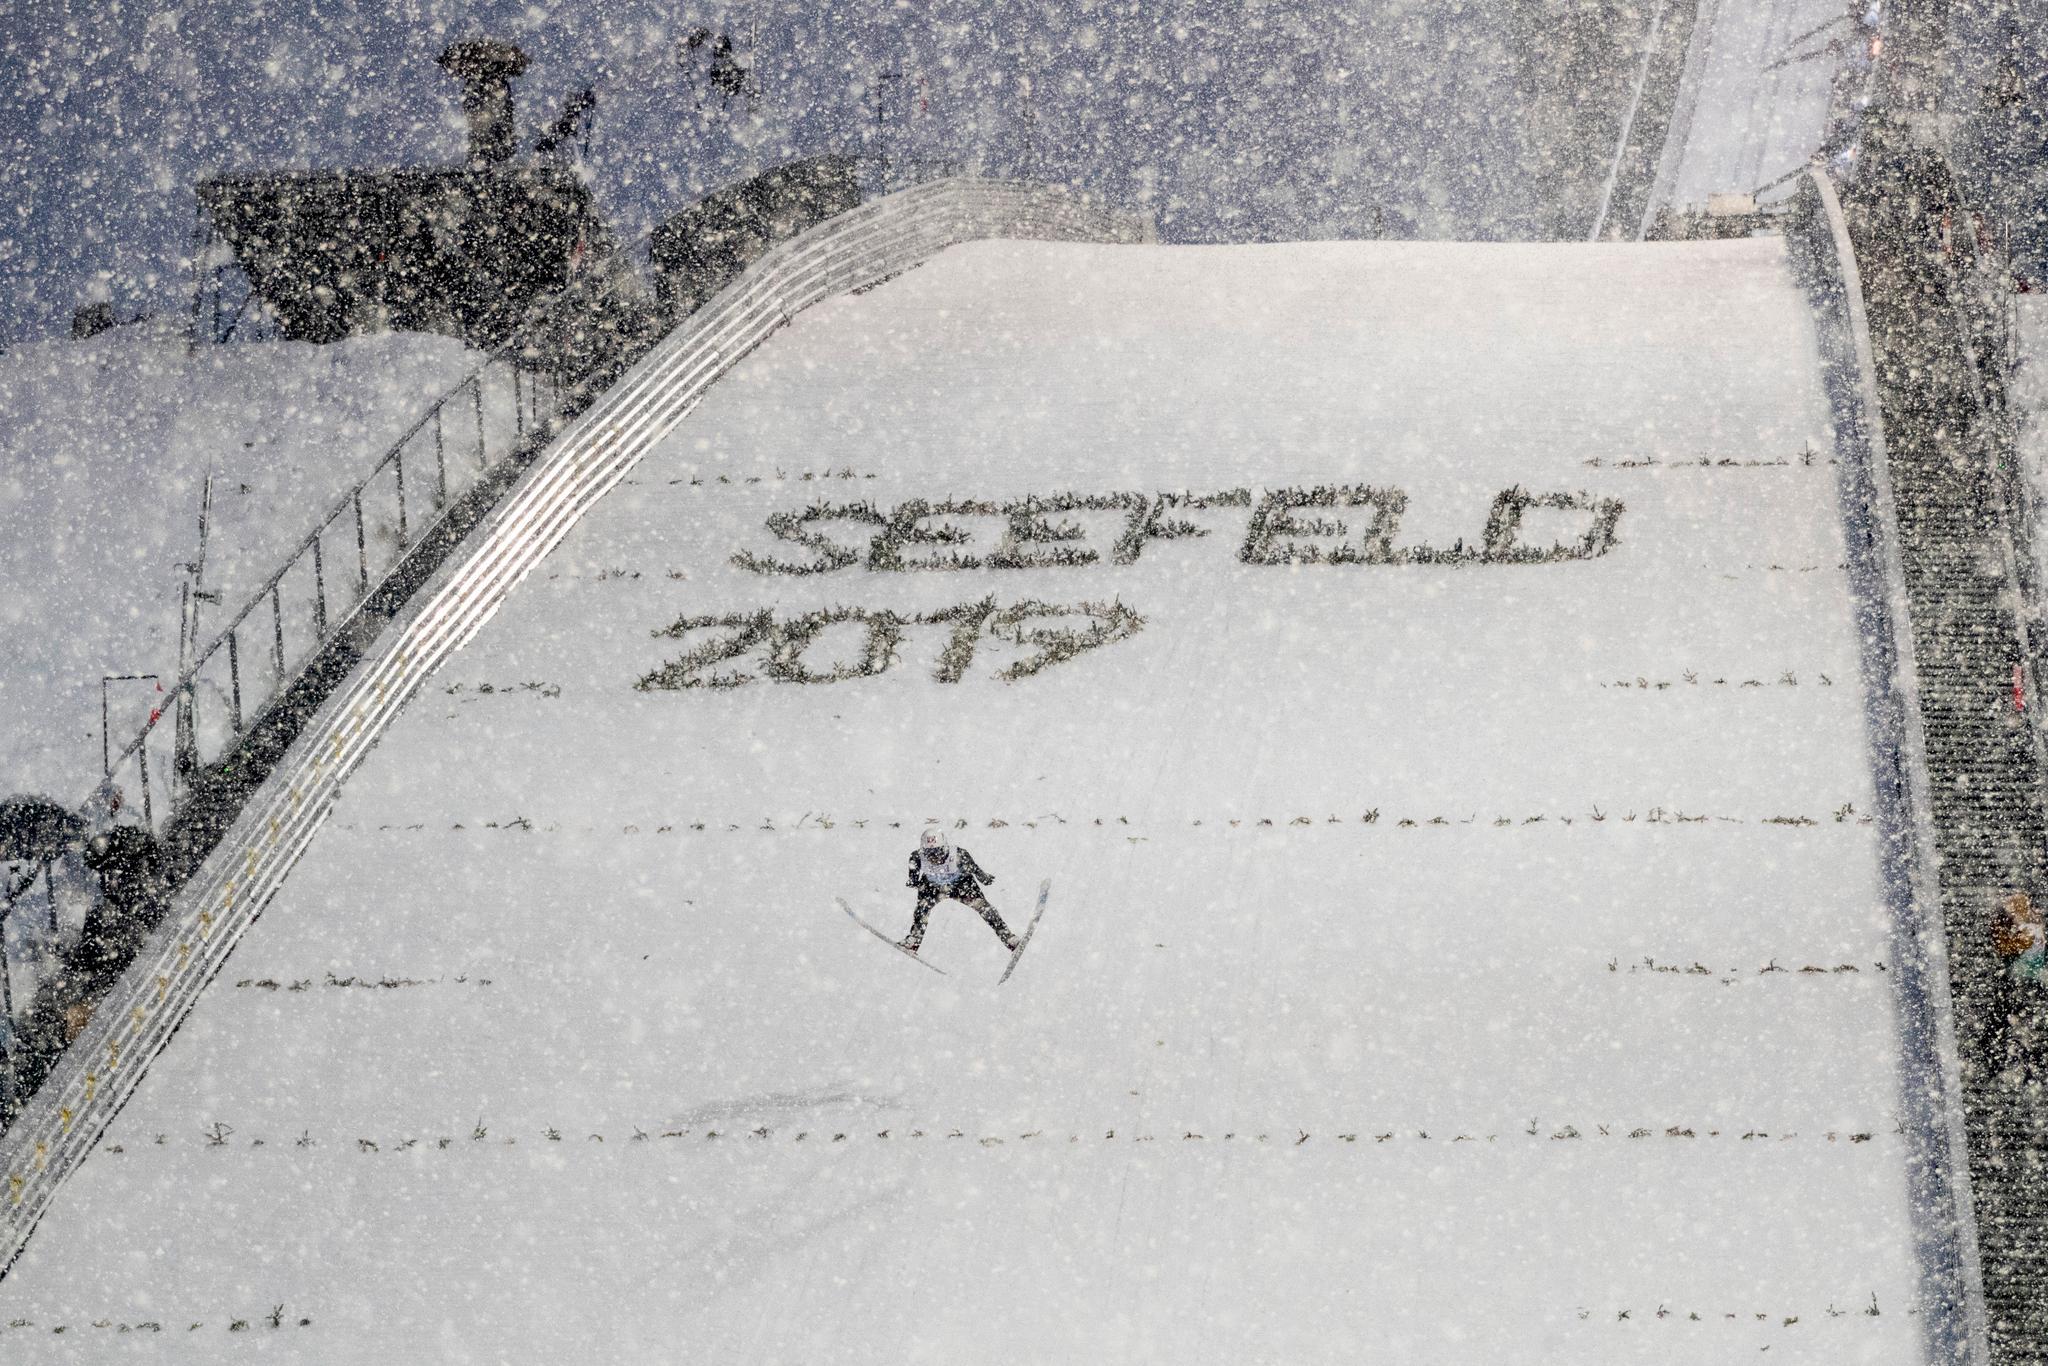 Det var ujevne forhold i normalbakken i Seefeld fredag kveld. Kraftig snøvær ble en utfordring for hopperne. – Dette var ikke rettferdig slo hoppsjef Clas Brede Bråten fast etter at rennet var over. 